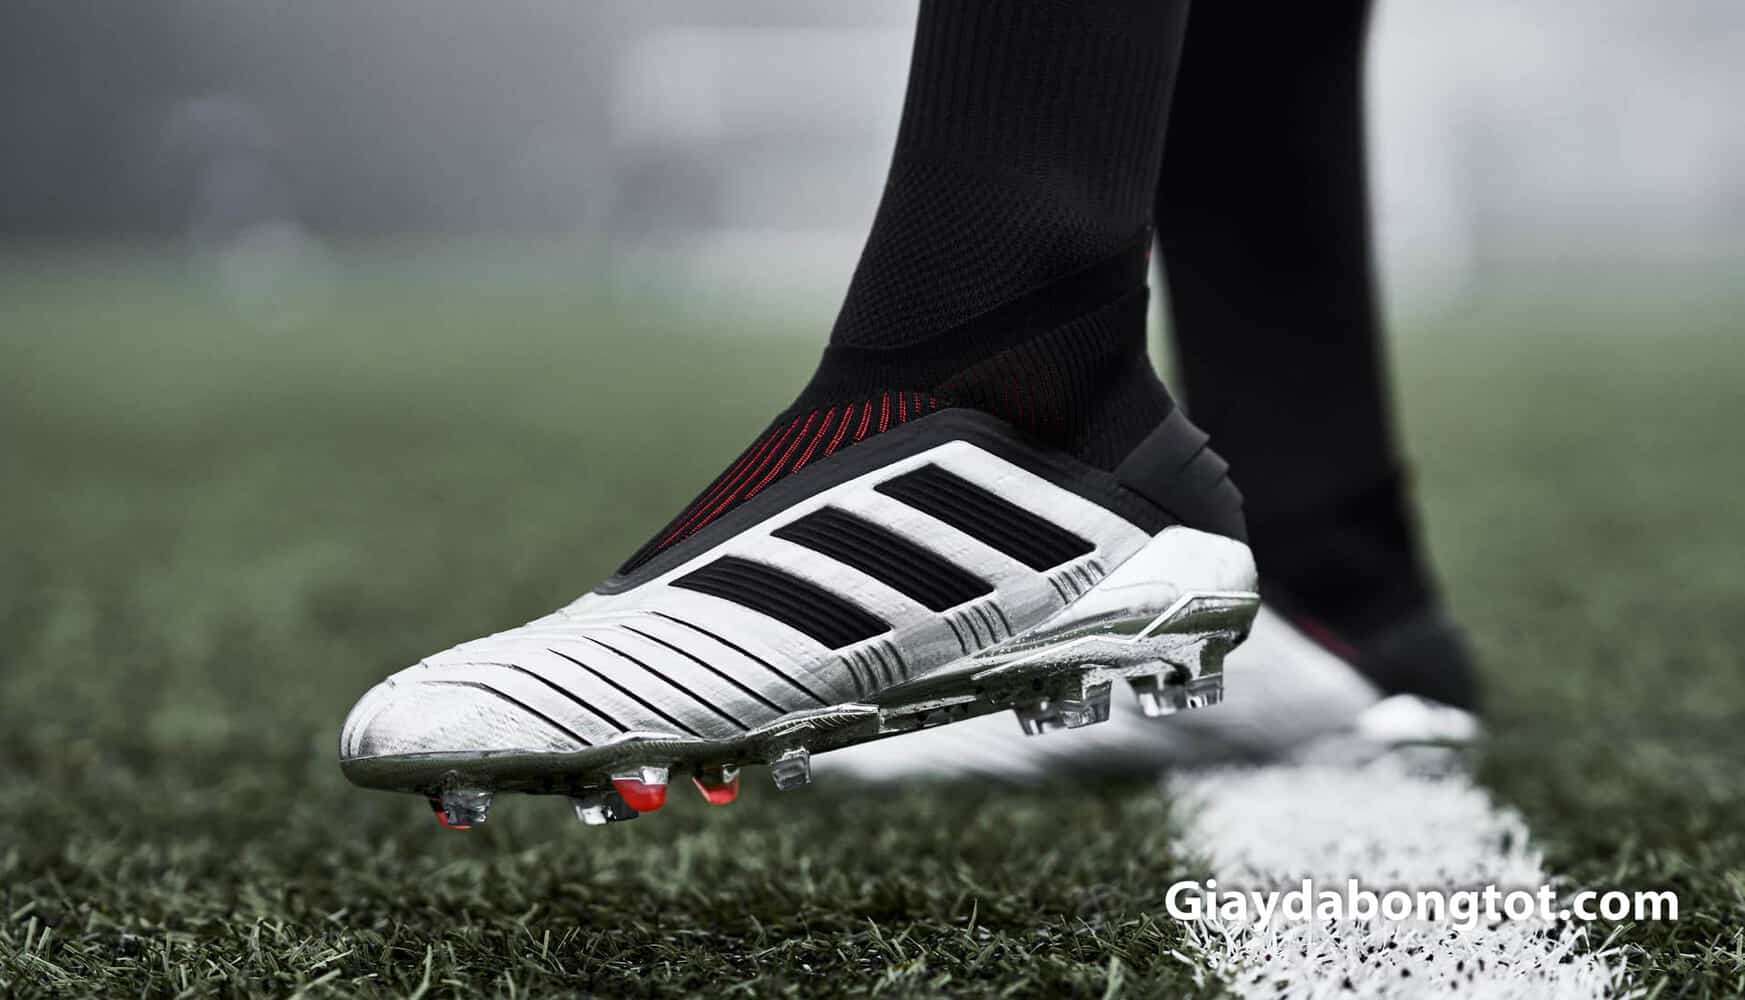 Đôi giày đá banh Adidas Predator 19+ màu bạc đen cực kỳ phù hợp với màu tất đẹp trên chân